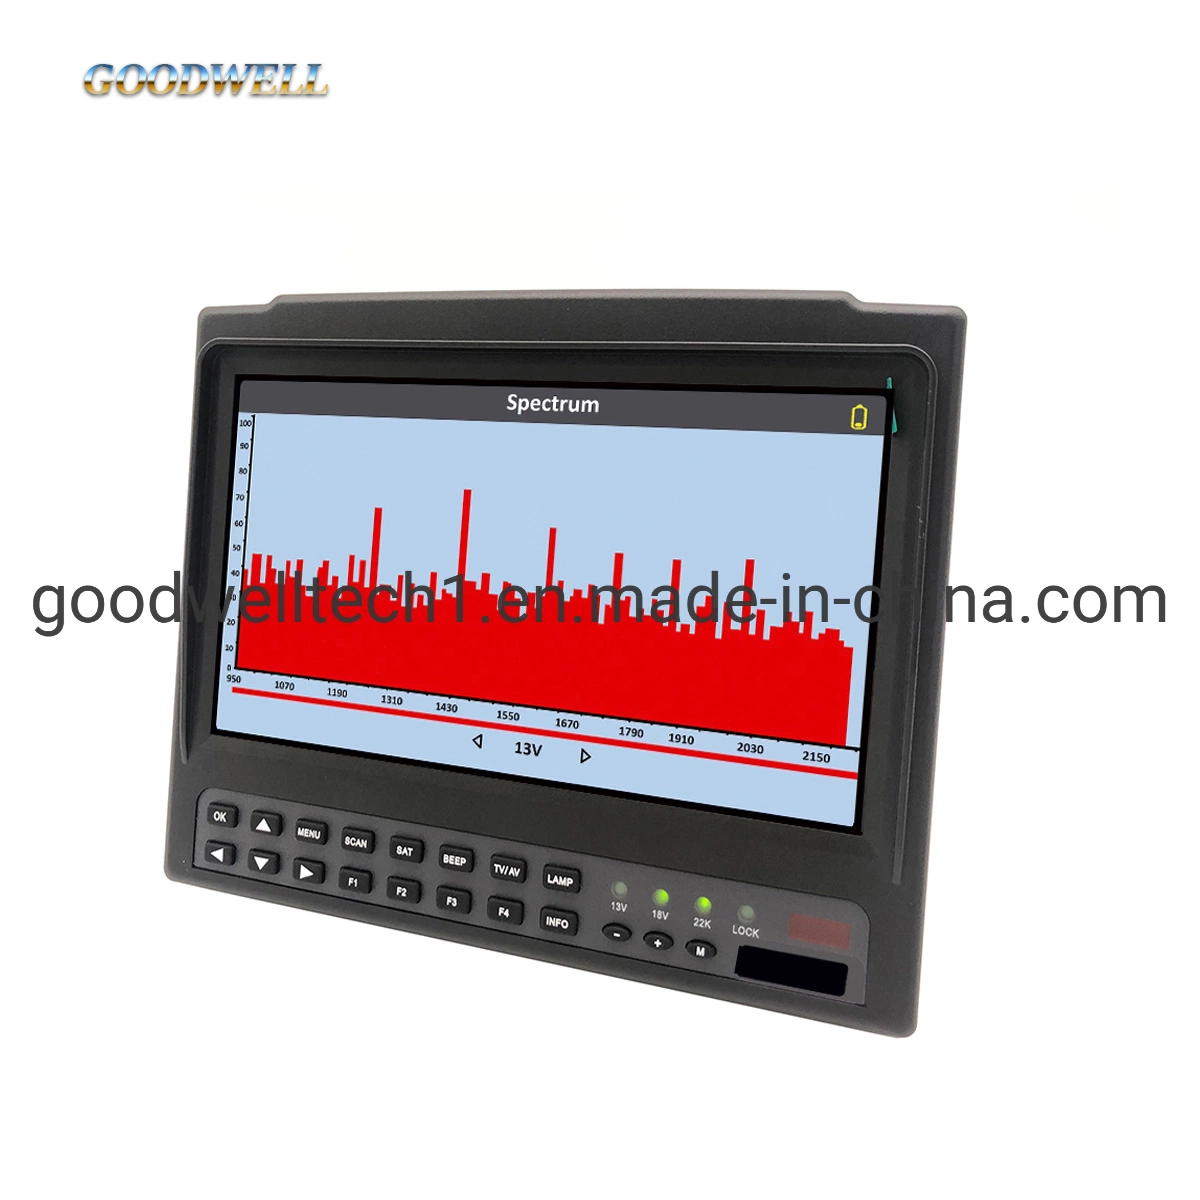 إمداد مباشر من المصنع بشاشة LCD مقاس 7 بوصات شاشة عرض الأقمار الصناعية معين DVB-S/S2 الباحث عن قمر الصناعي الرقمي 718st+